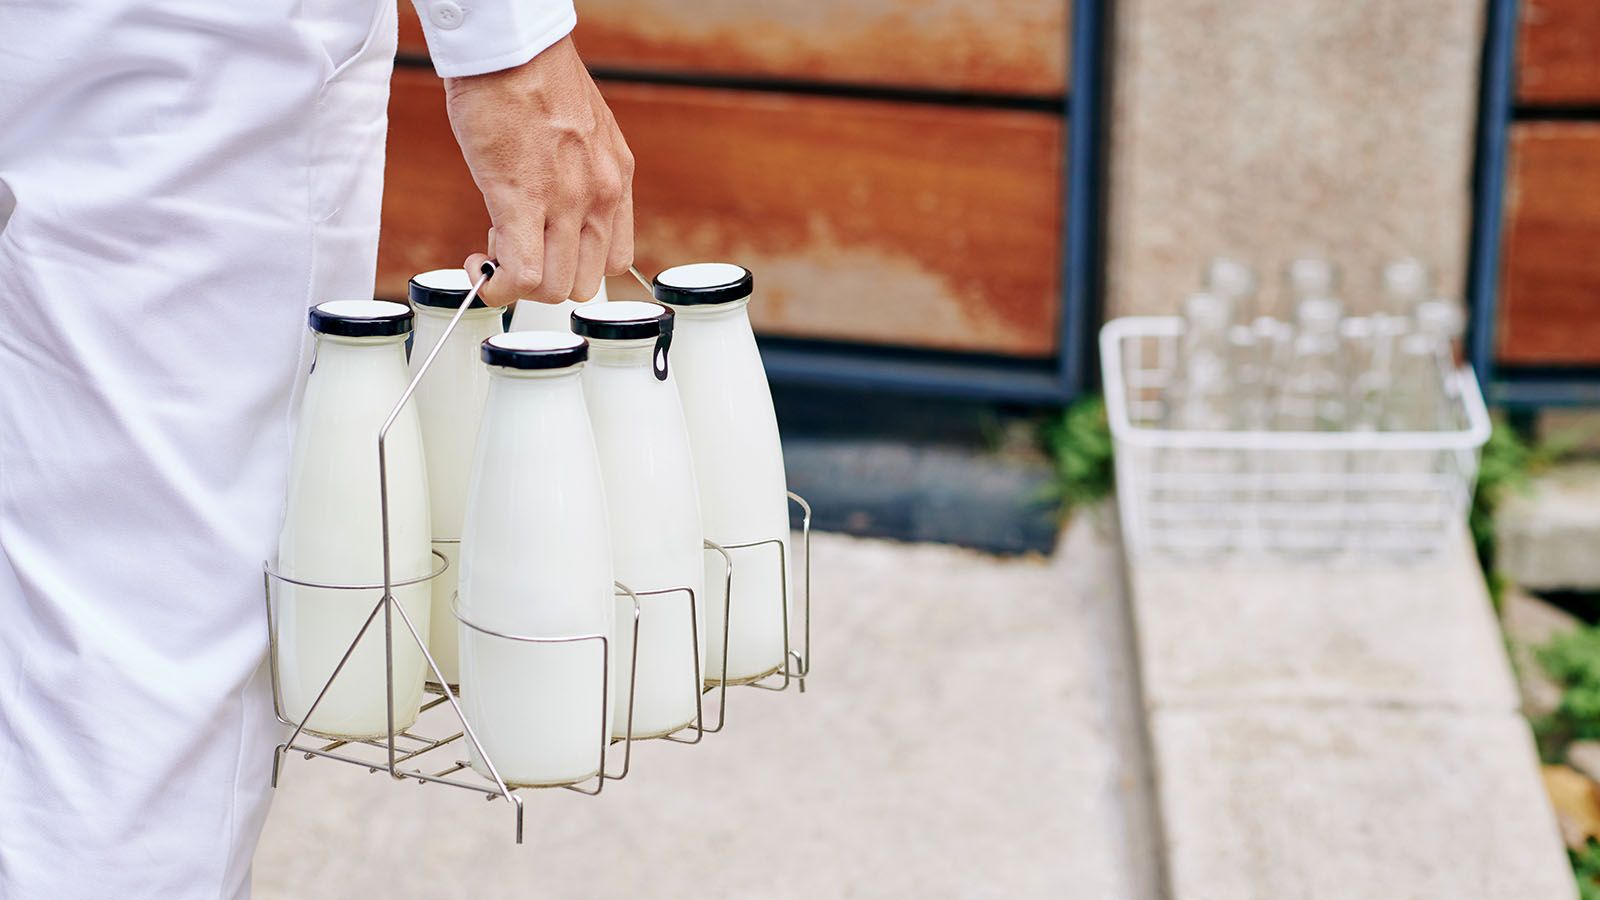 Kuehnert Dairy Farm will soon bring milk to your door.